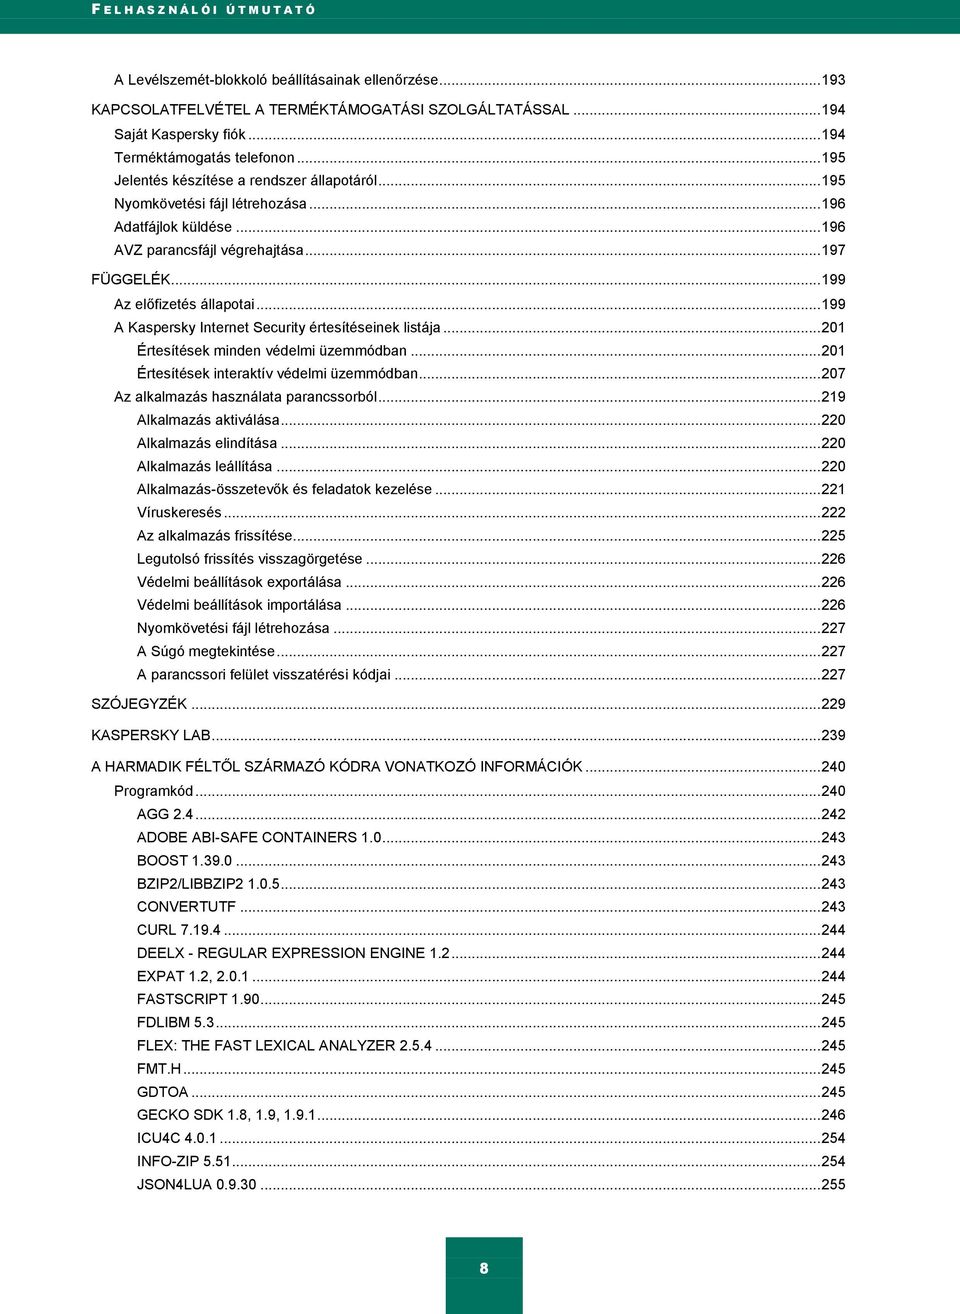 .. 199 Az előfizetés állapotai... 199 A Kaspersky Internet Security értesítéseinek listája... 201 Értesítések minden védelmi üzemmódban... 201 Értesítések interaktív védelmi üzemmódban.